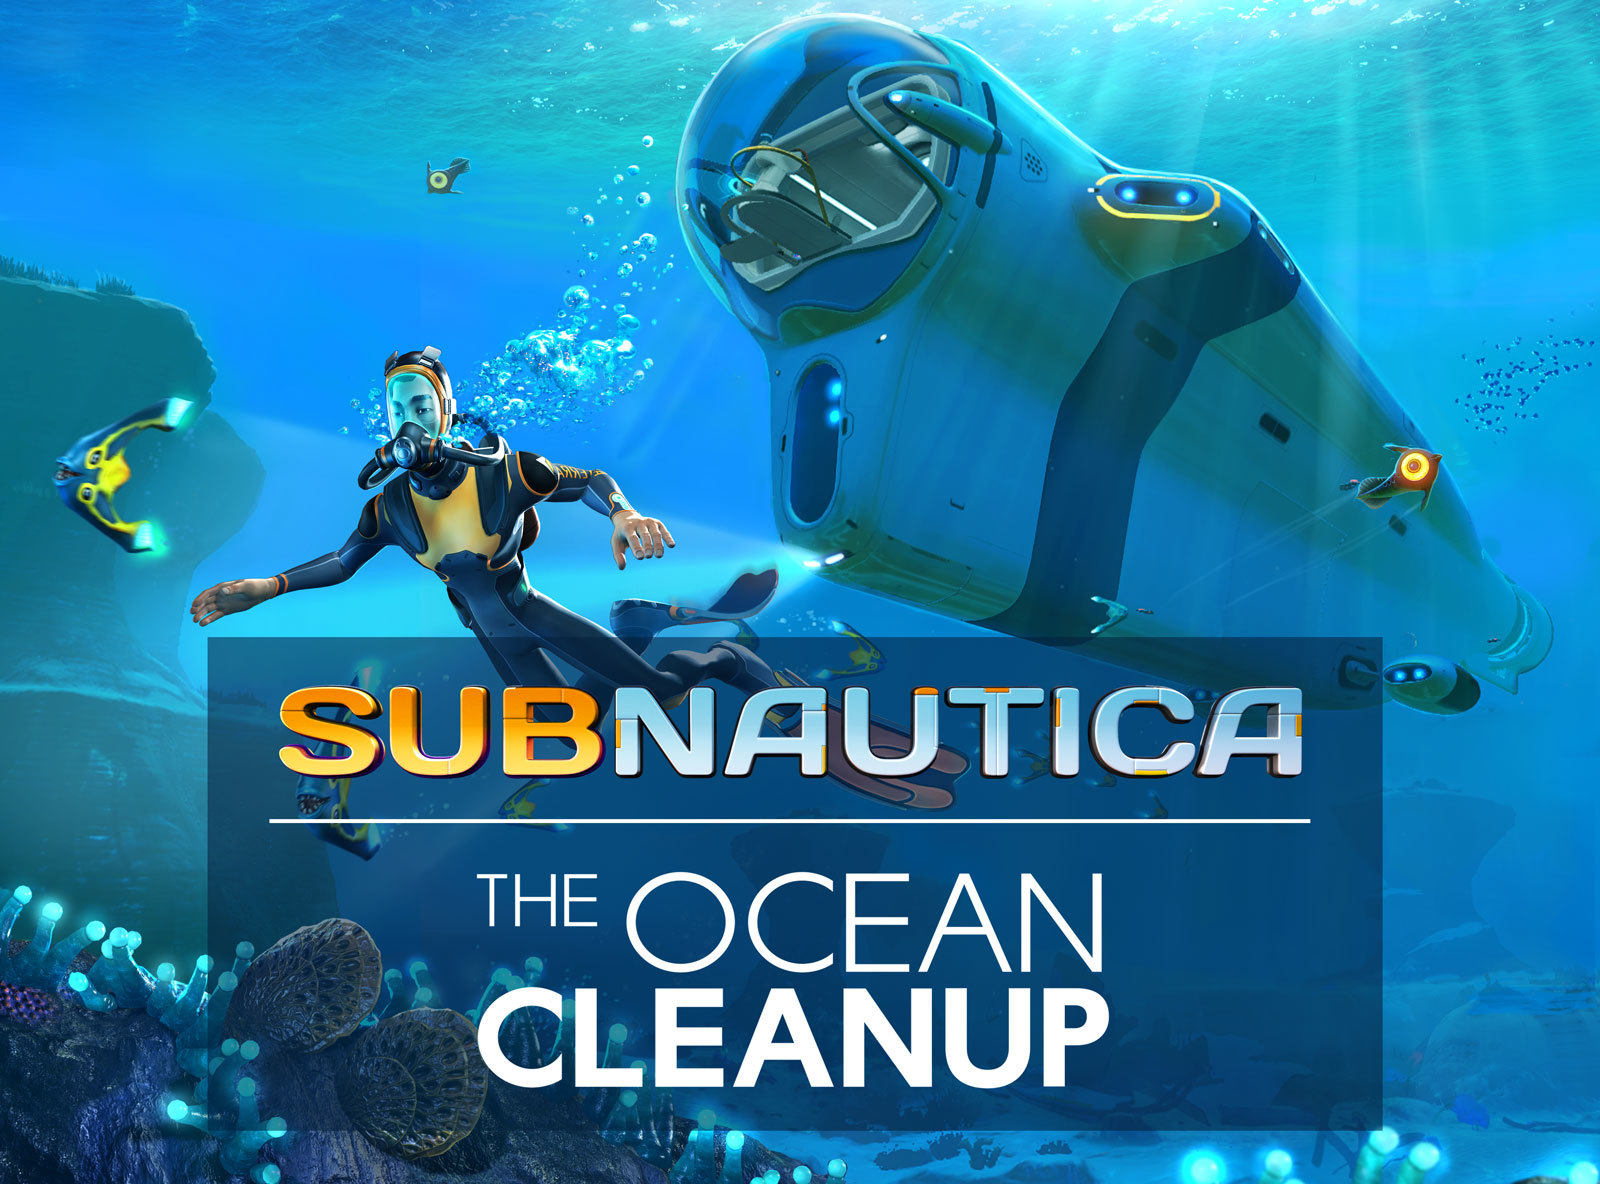 subnautica 3 announced